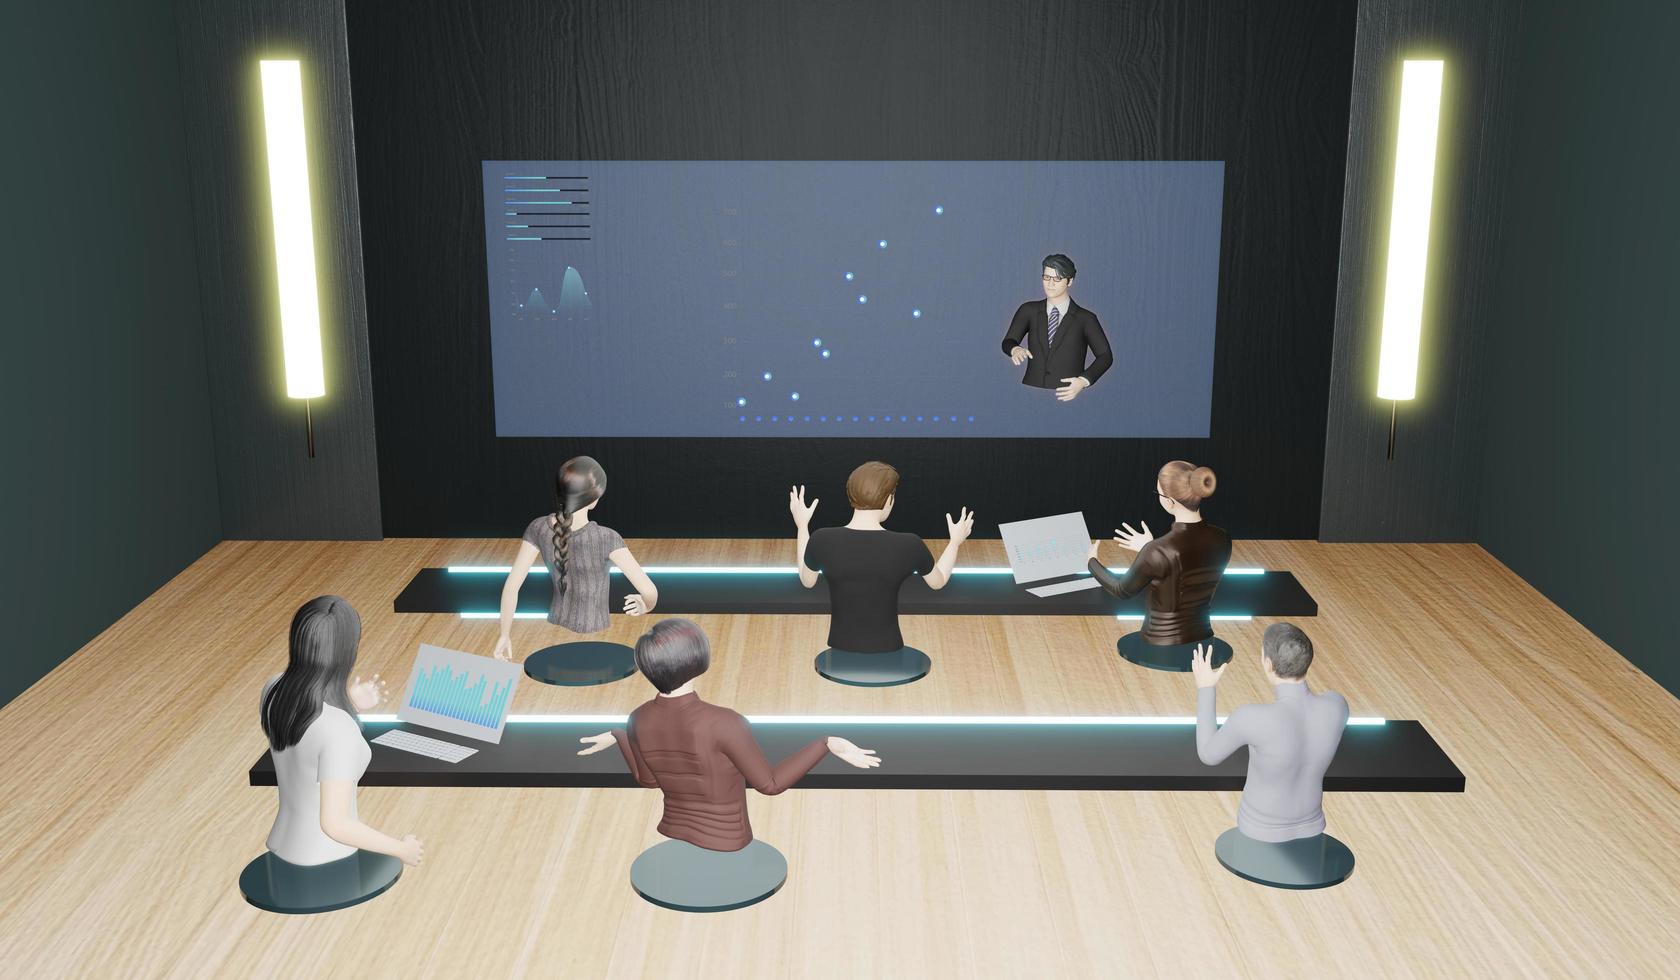 onlinekurser onlineseminarier onlinemötesavatarer på kontoret och klassrummet människor i metaverse 3d-illustration foto